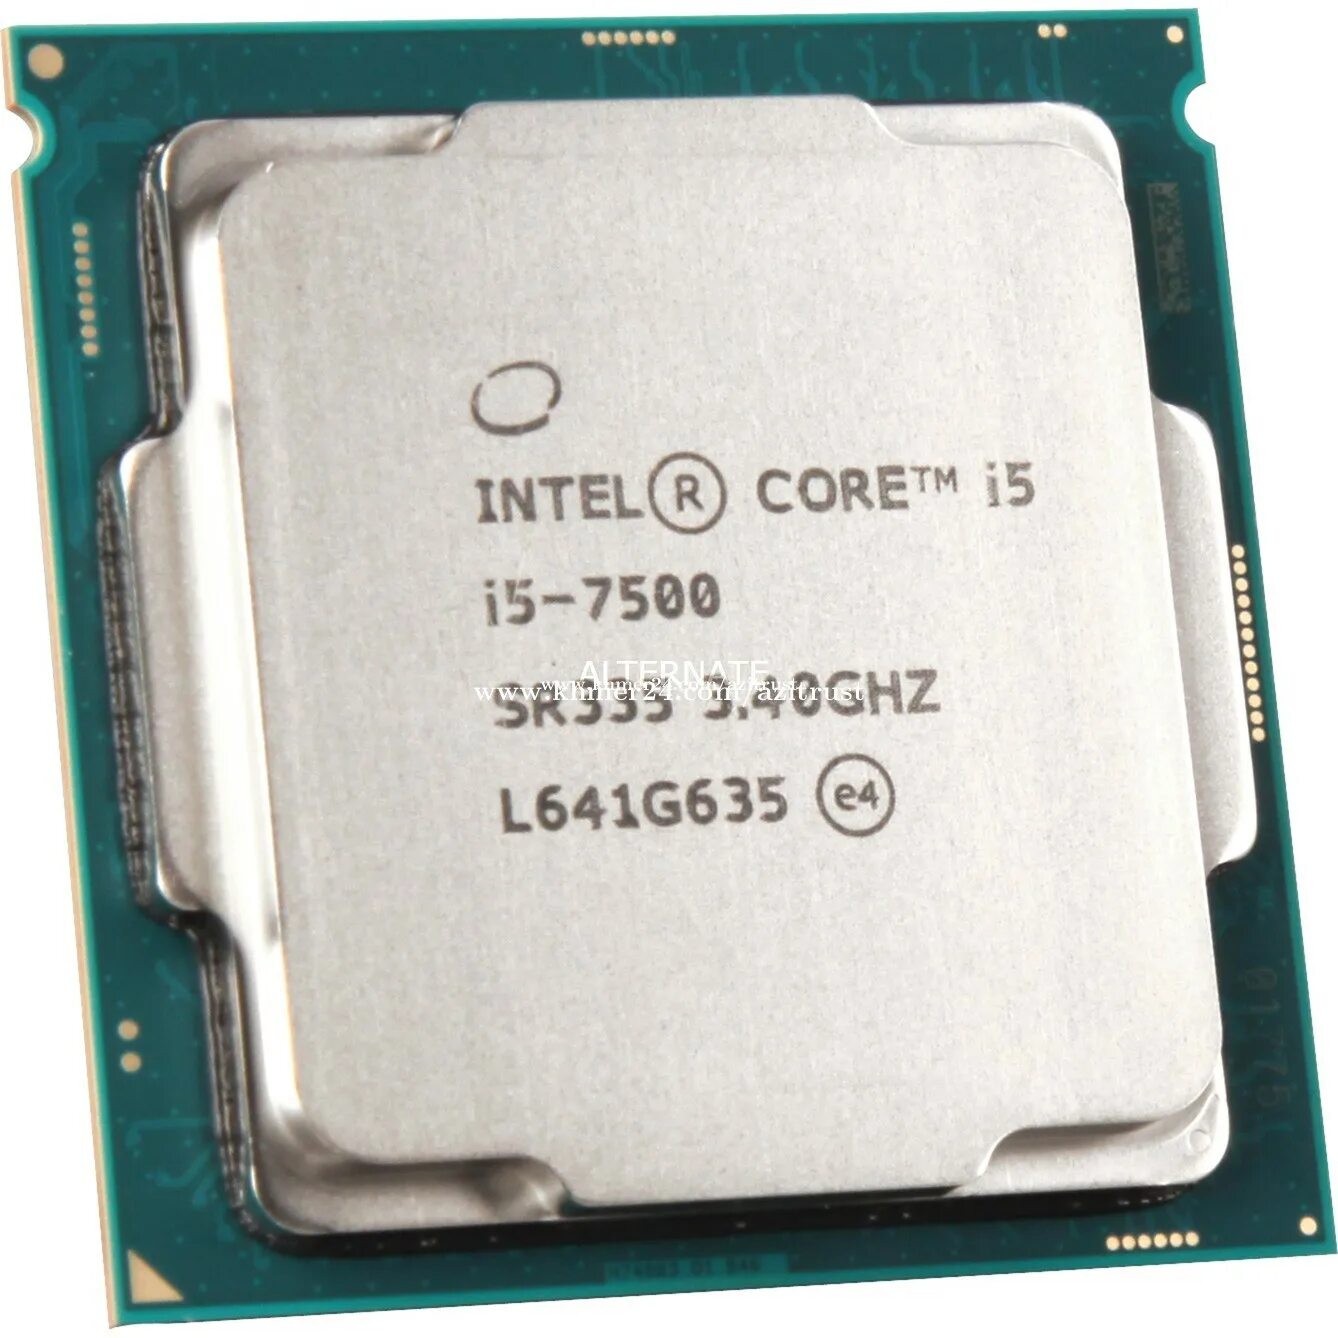 Интел 7500. Intel Core i5-7600k. Intel(r) Core(TM) i5. Intel(r) Core(TM) i5-7500t CPU @ 2.70GHZ 2.71 GHZ. Процессор Intel Core i3-10100f.